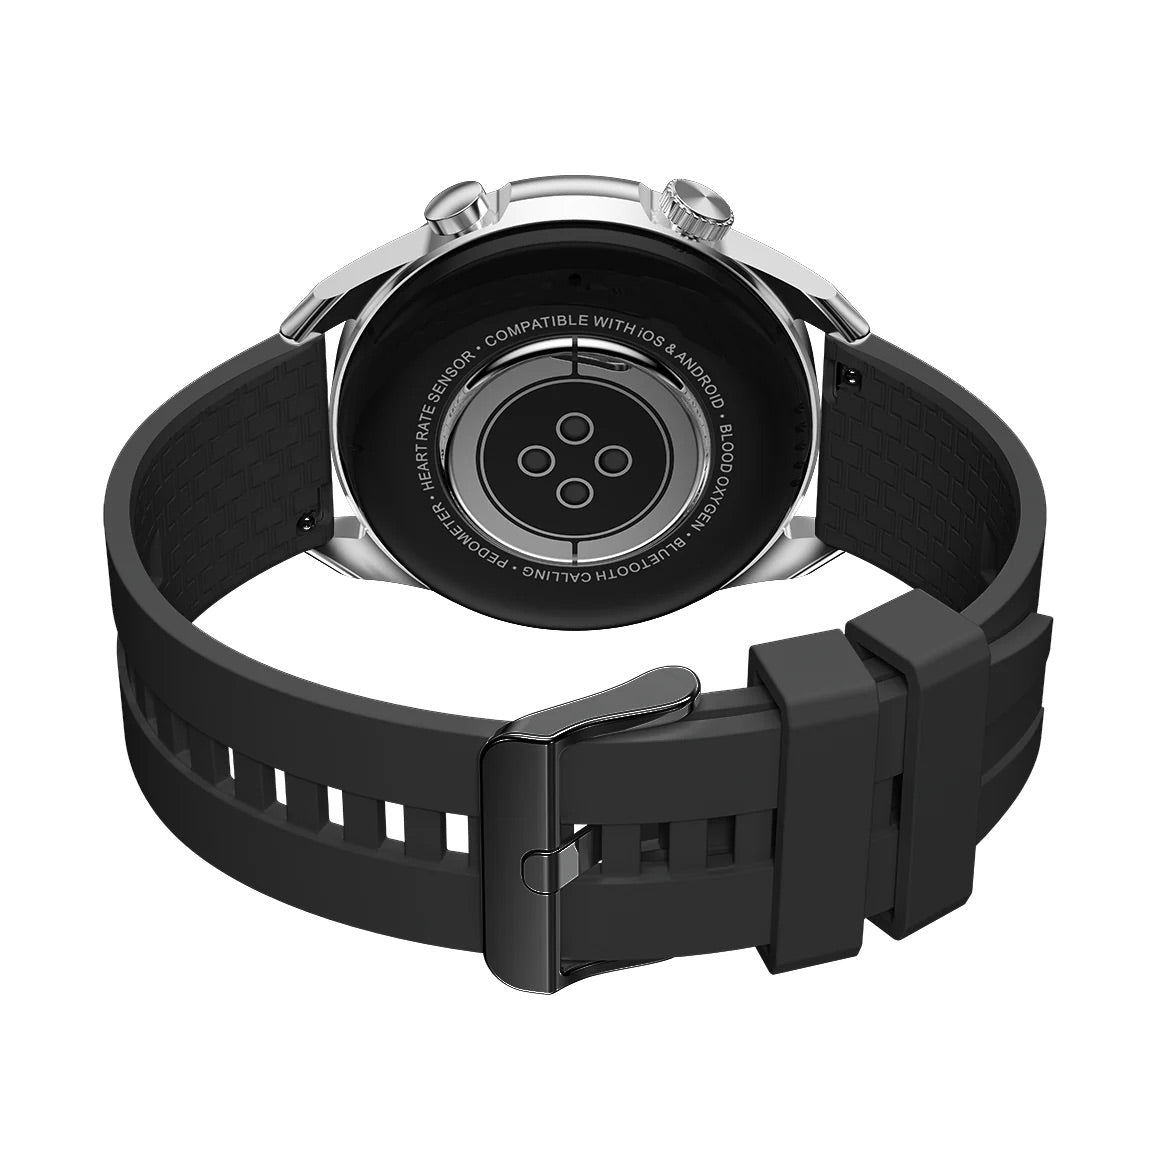 iGear Smartwatch Onyx Series